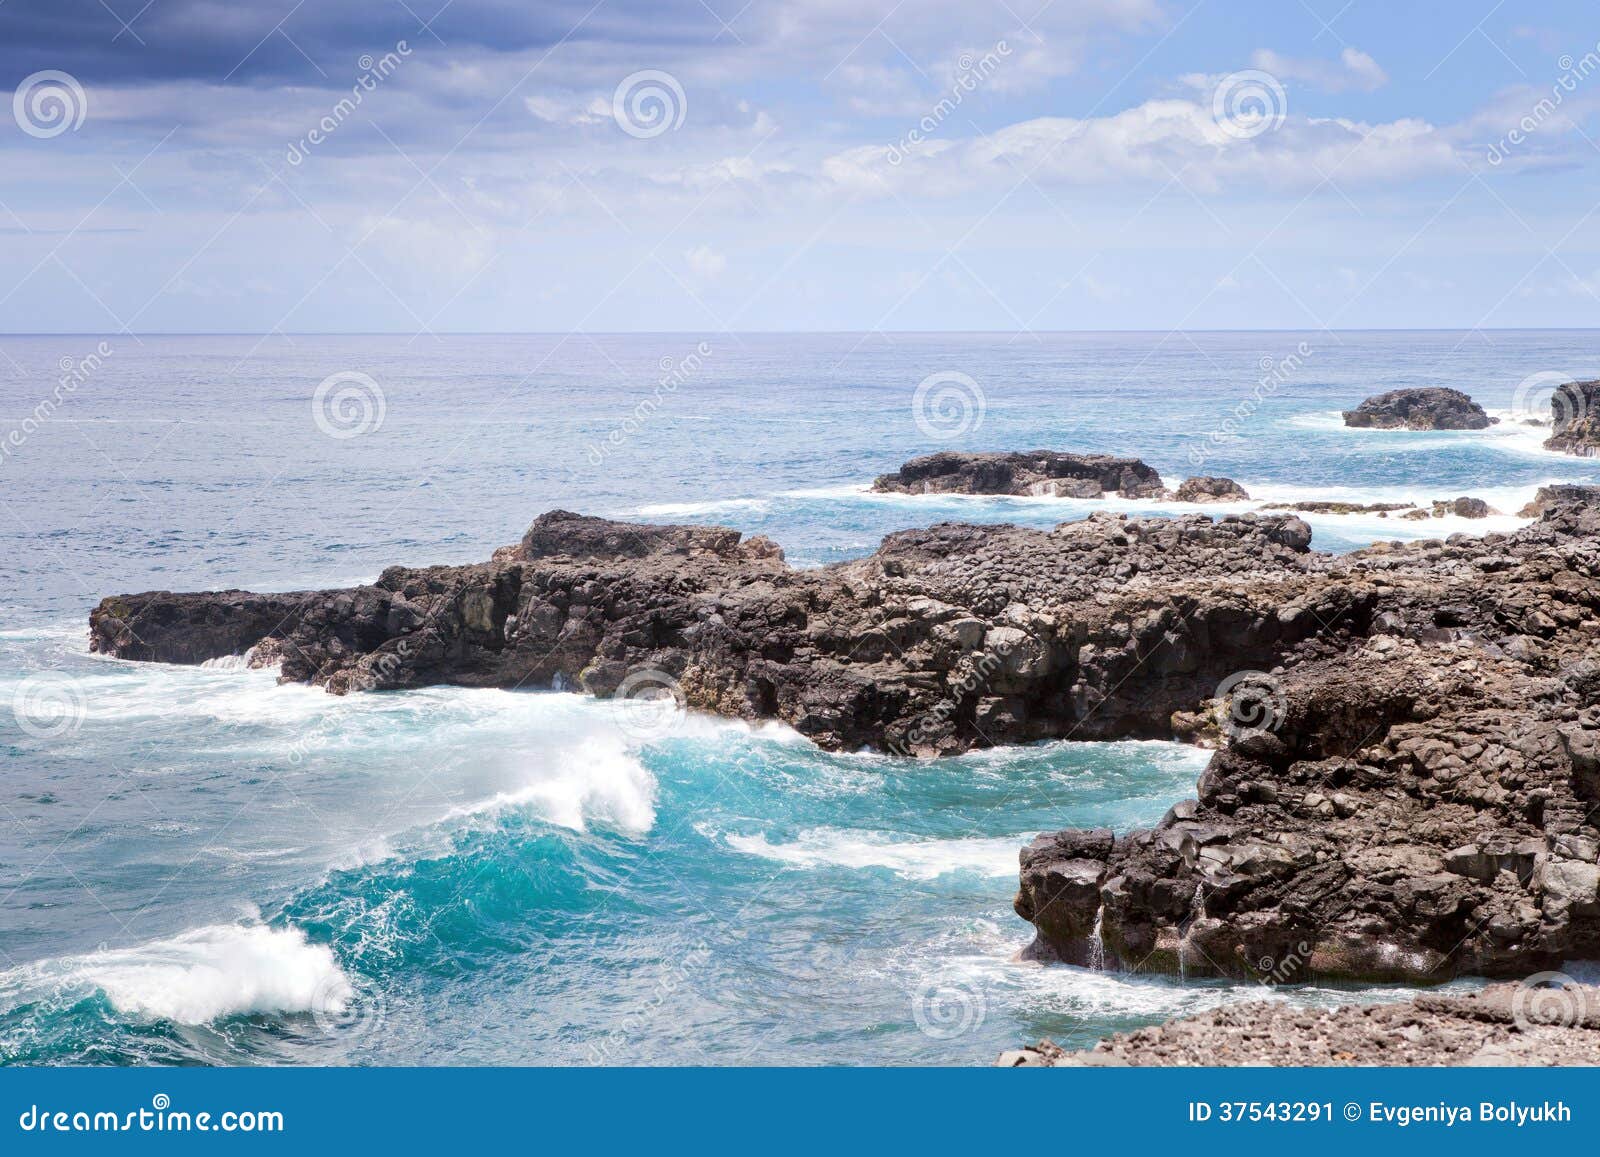 mauritius island ocean landscape